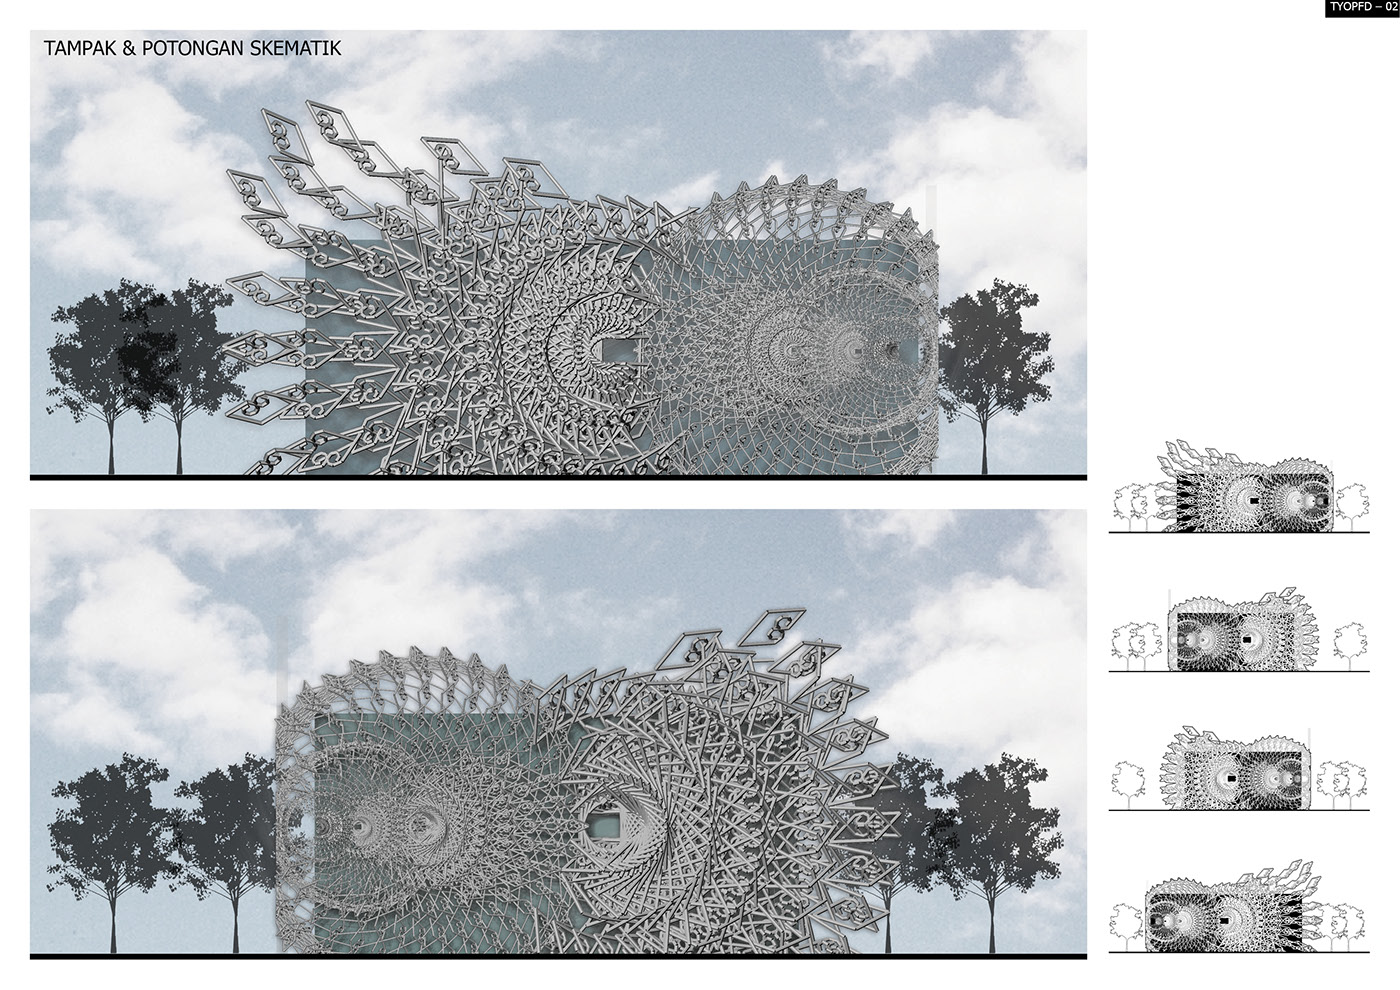 batik megamendung fractal parametric design sierpinskitriangle Competition bandung patttern fabrication